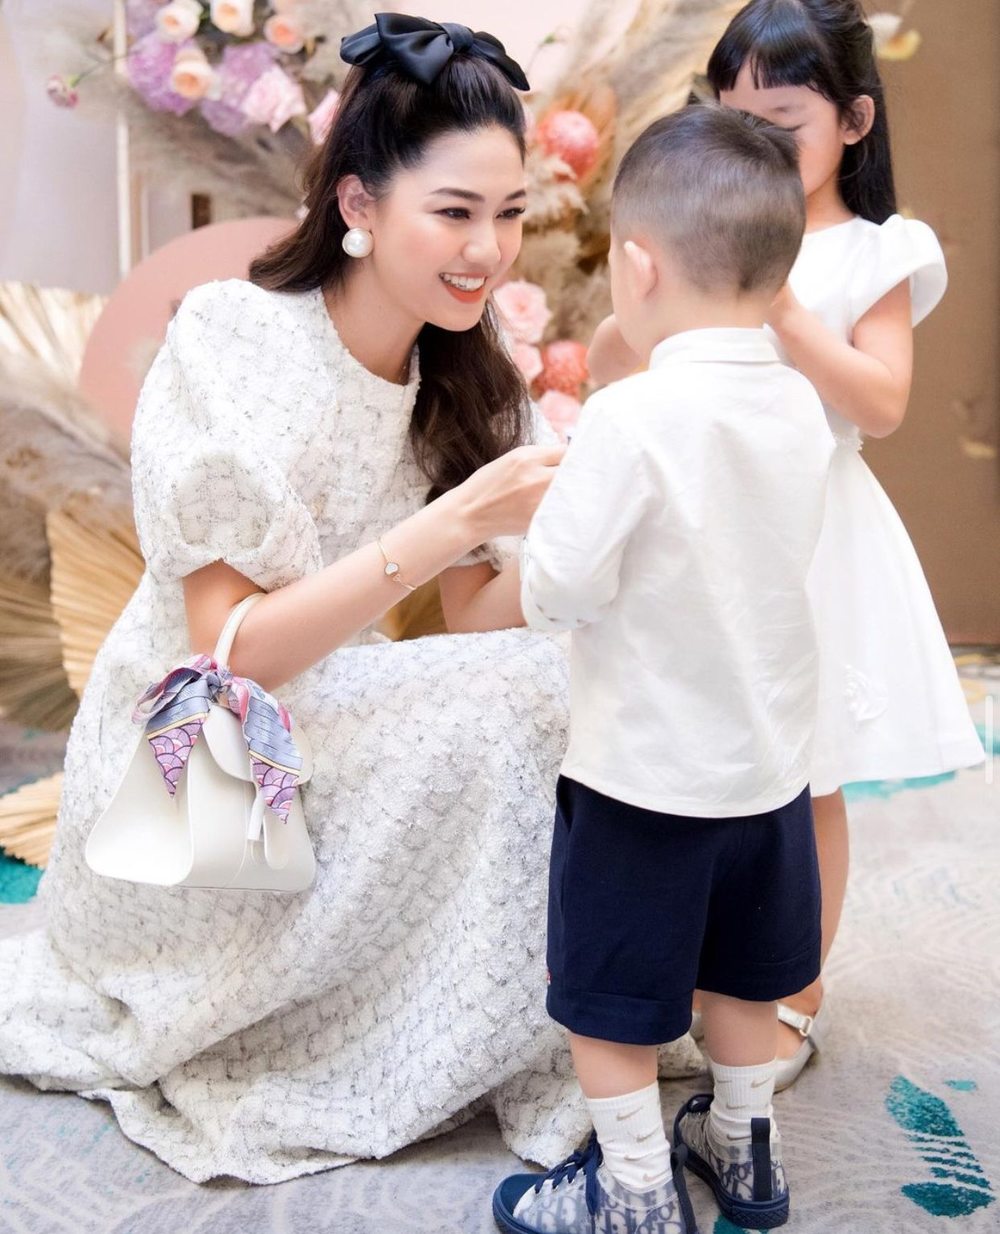 Trước đó khi dự tiệc gia đình, người đẹp cũng đeo một mẫu túi hiệu dù bận chăm sóc con. (Ảnh: Instagram tttu.ngo)